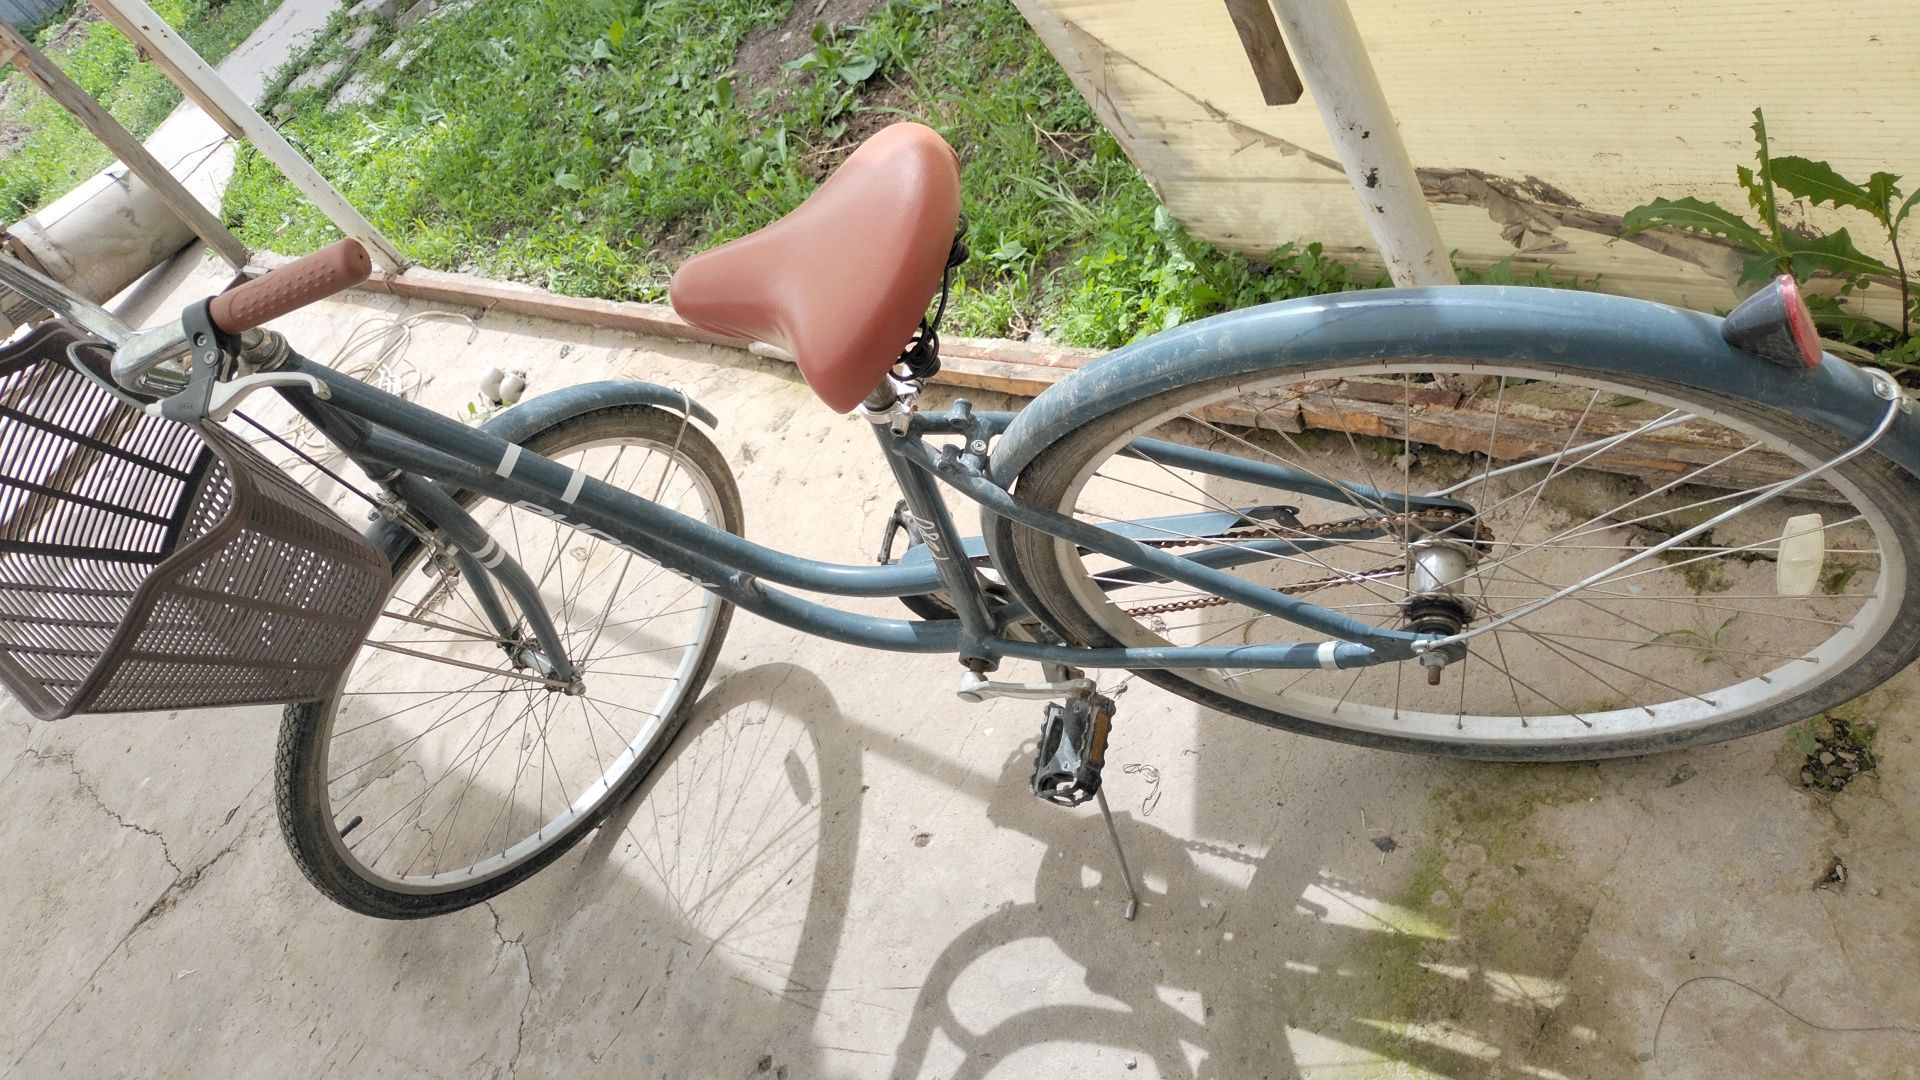 Продам велосипед Айст хорошем состоянии почти не ездил 50 000 тг брала